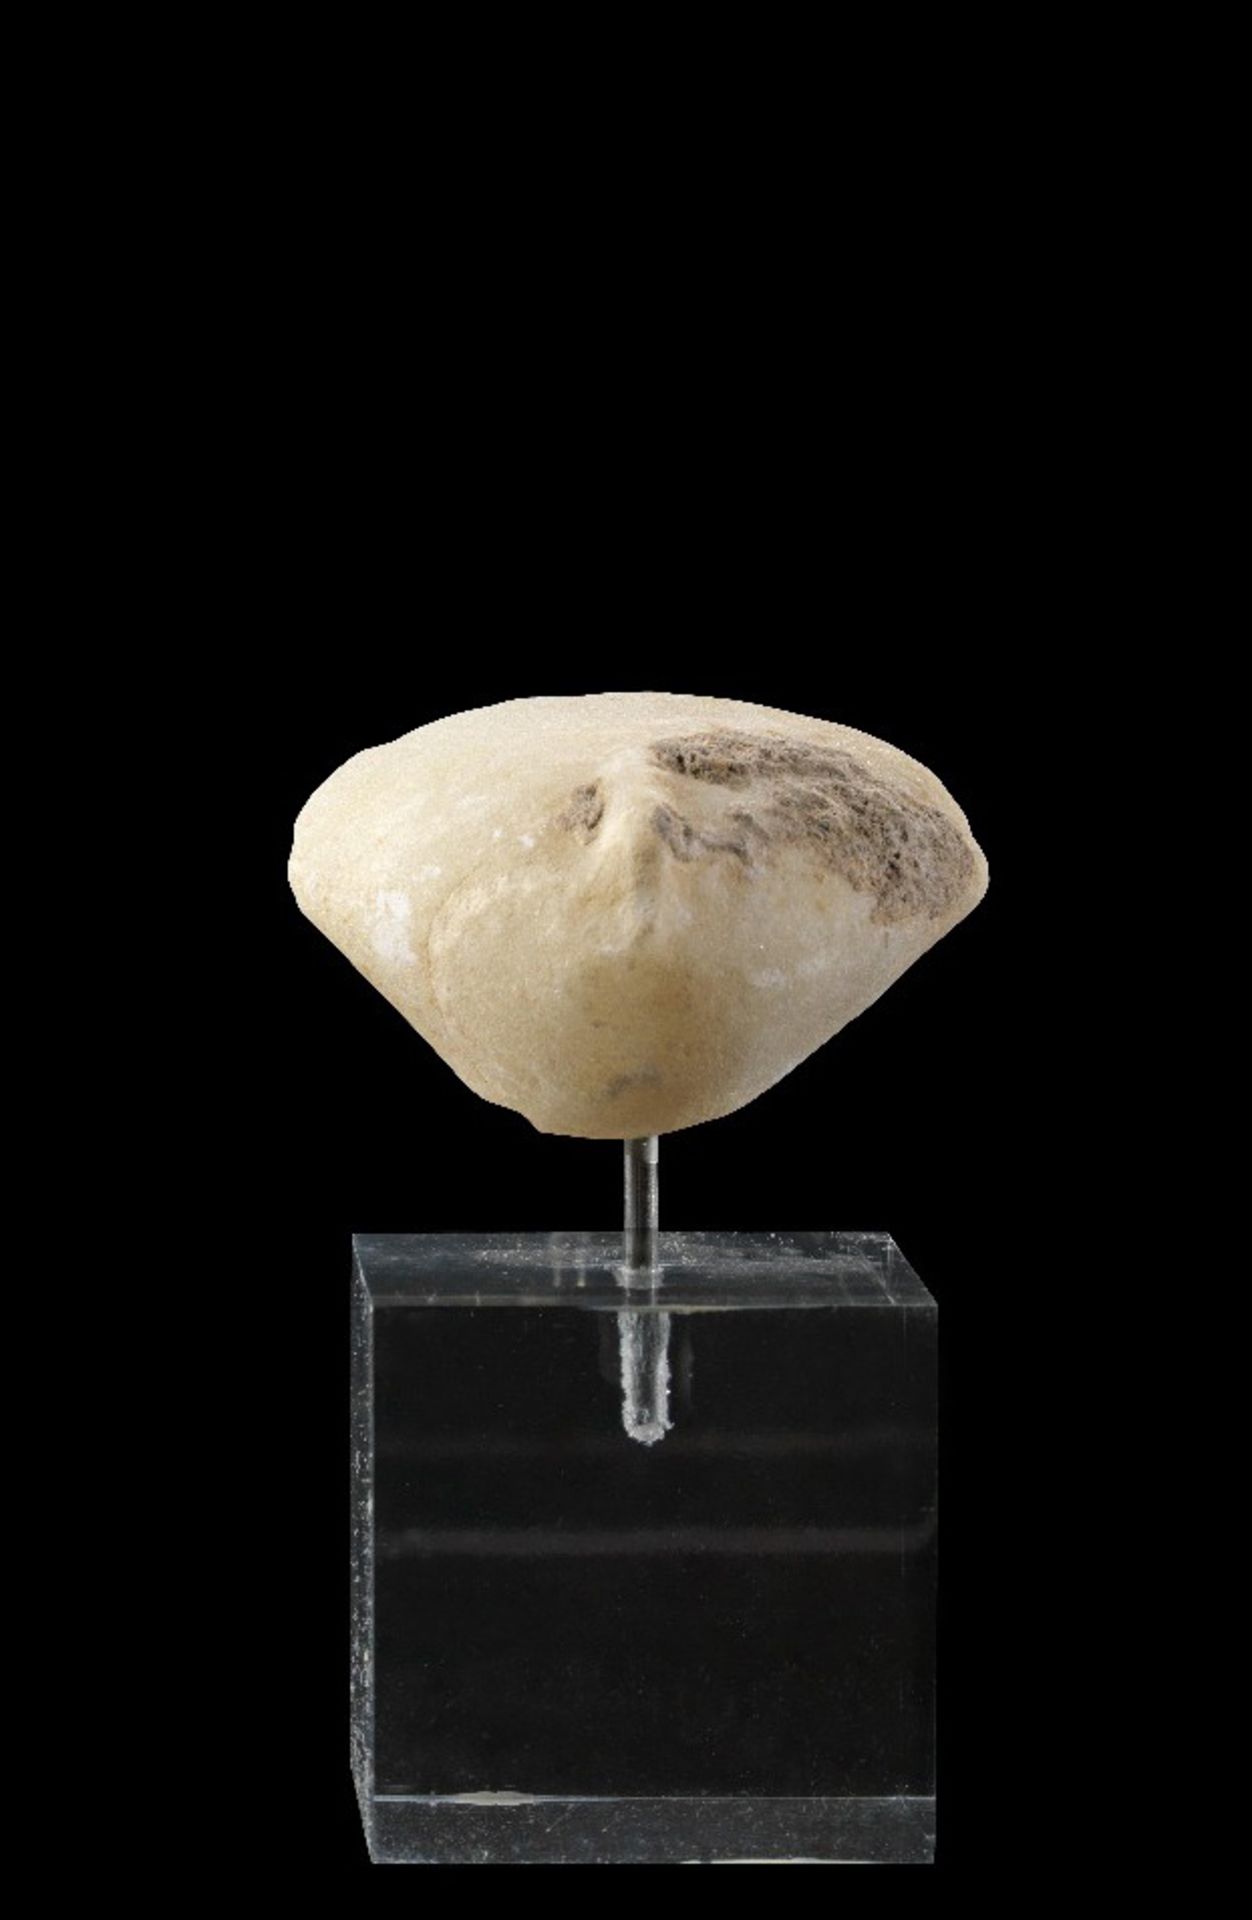 Idol-Köpfchen. Westasiatisch, ca. 2700 - 2400 v. Chr. H 2,1cm. Weißer, feinkristalliner Marmor.